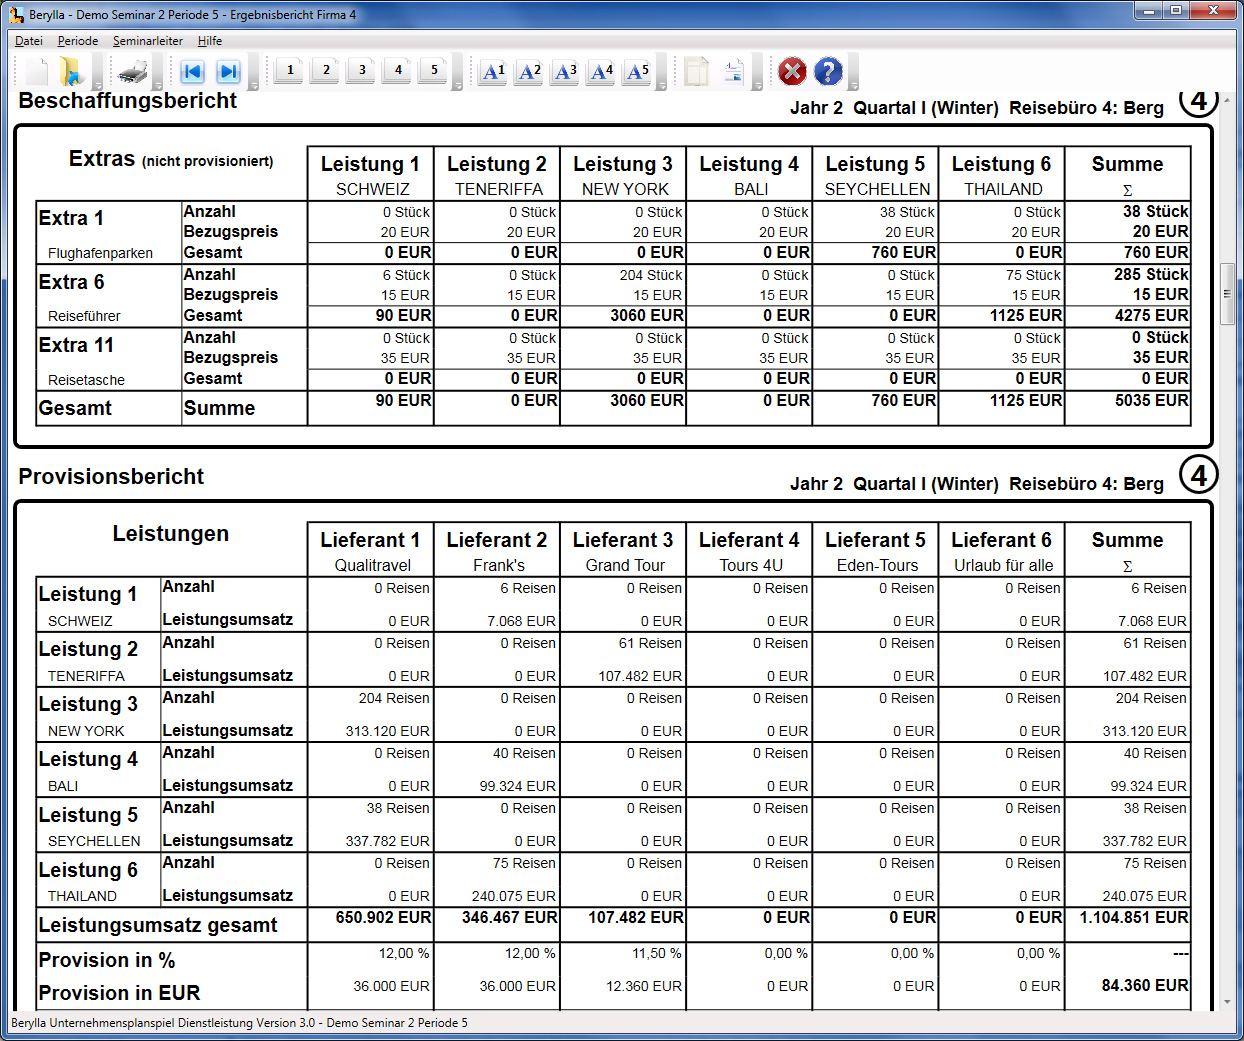 Screenshot Berylla - Beschaffungs- und Provisionsbericht